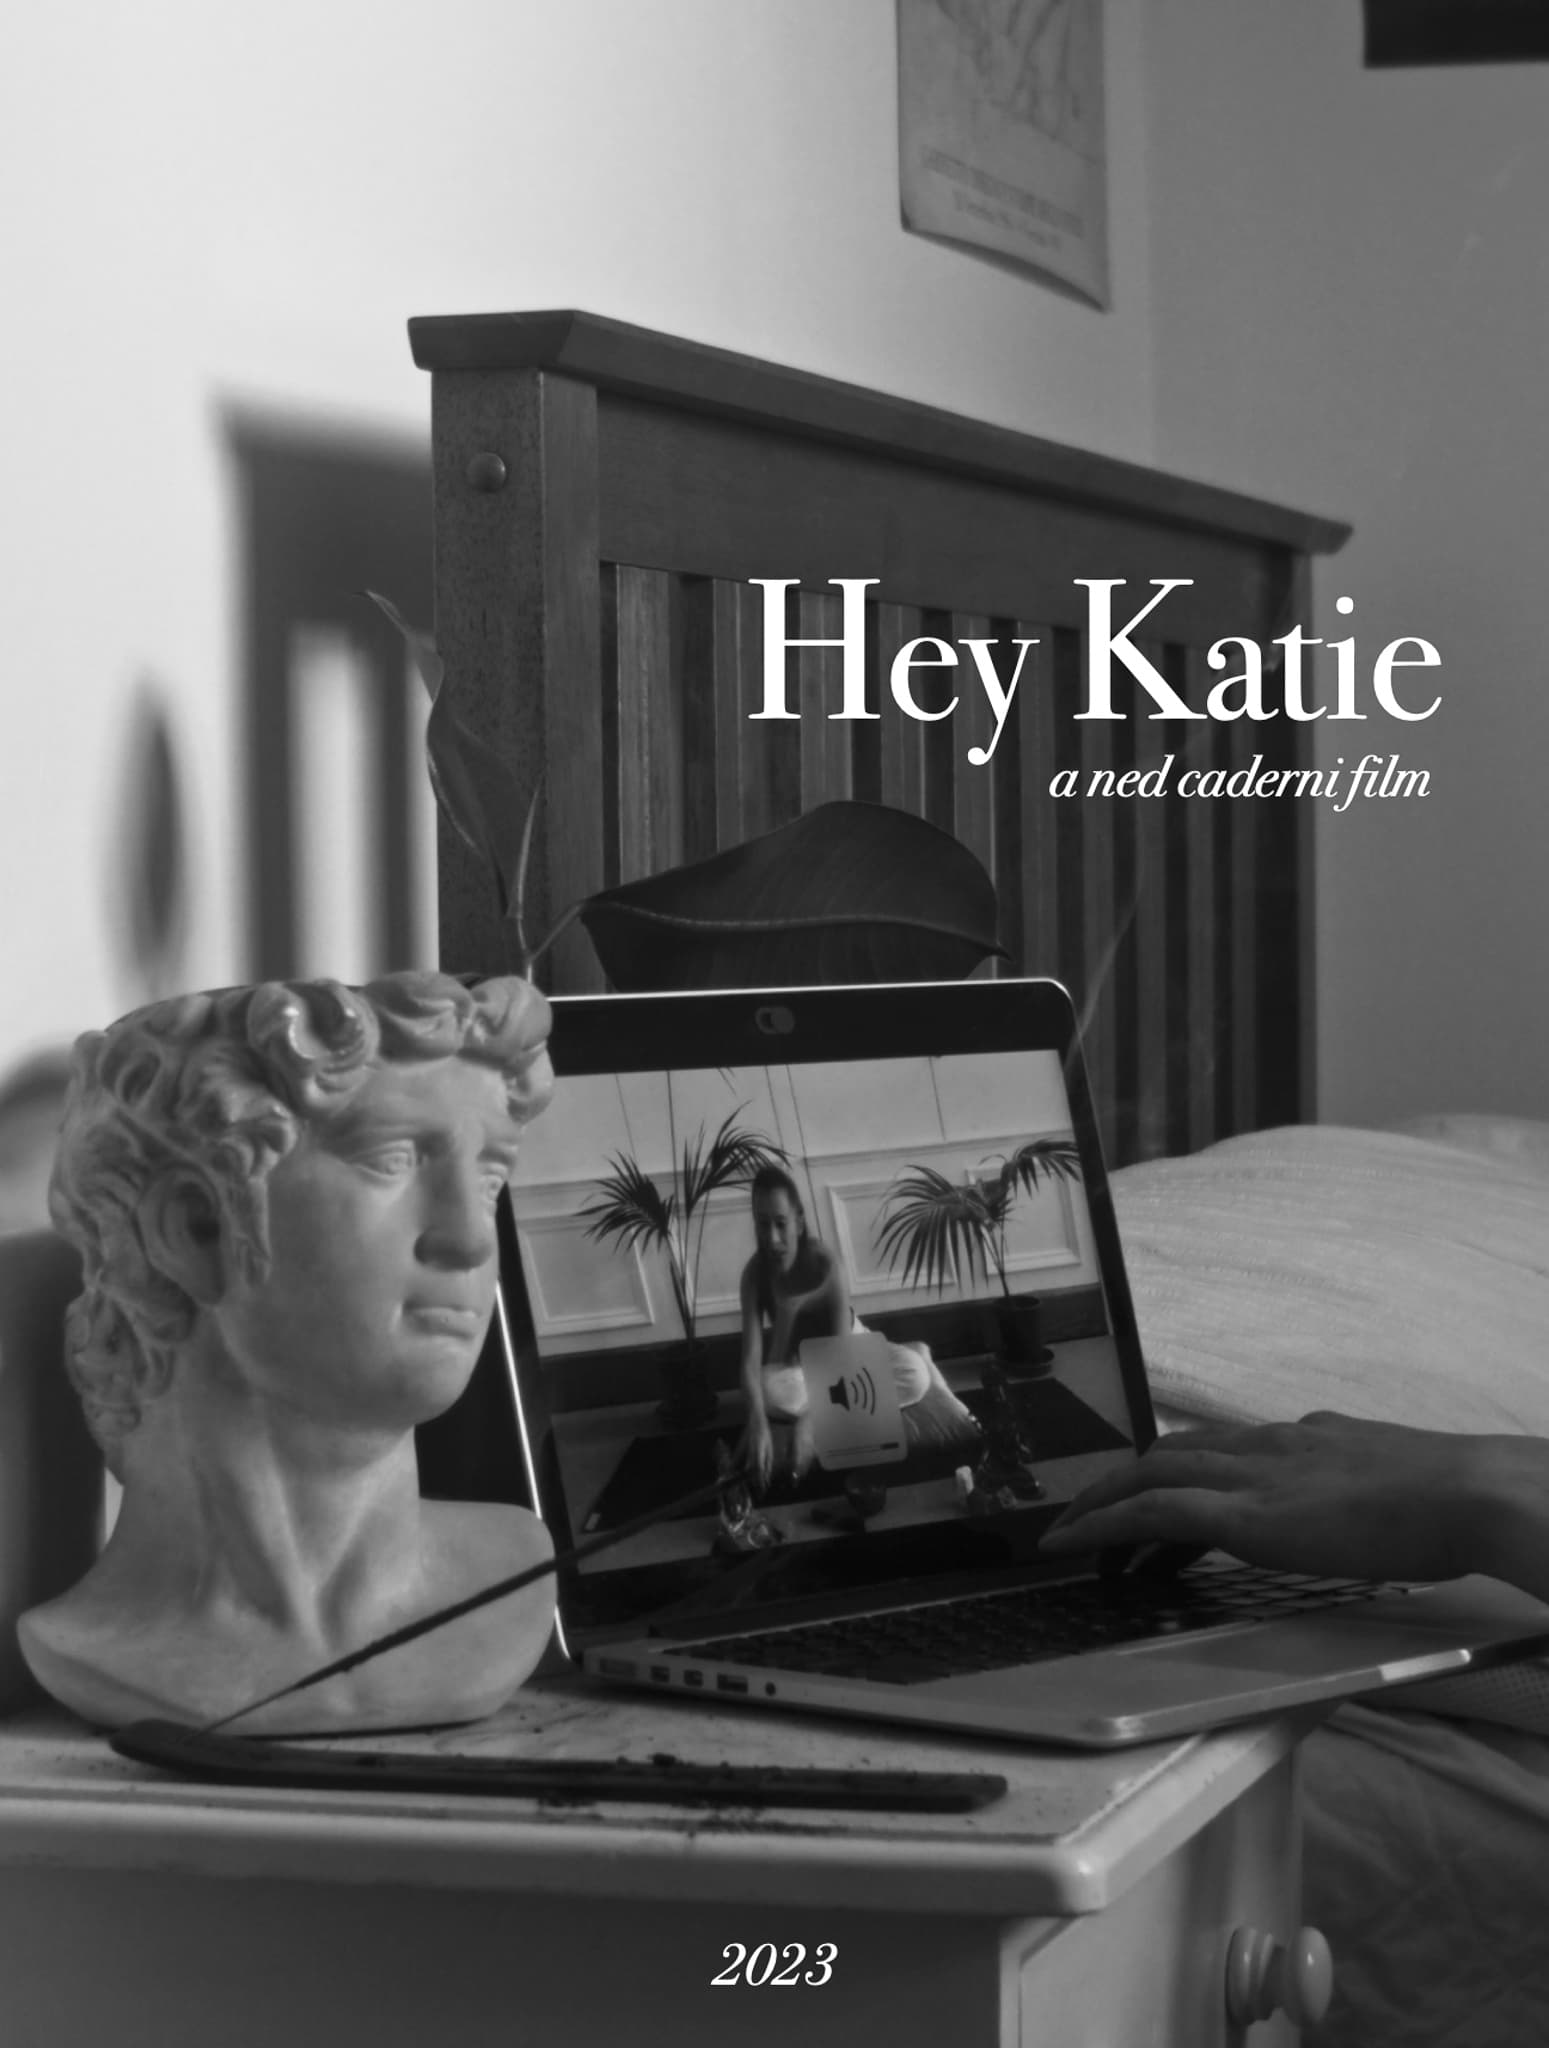 Hey Katie